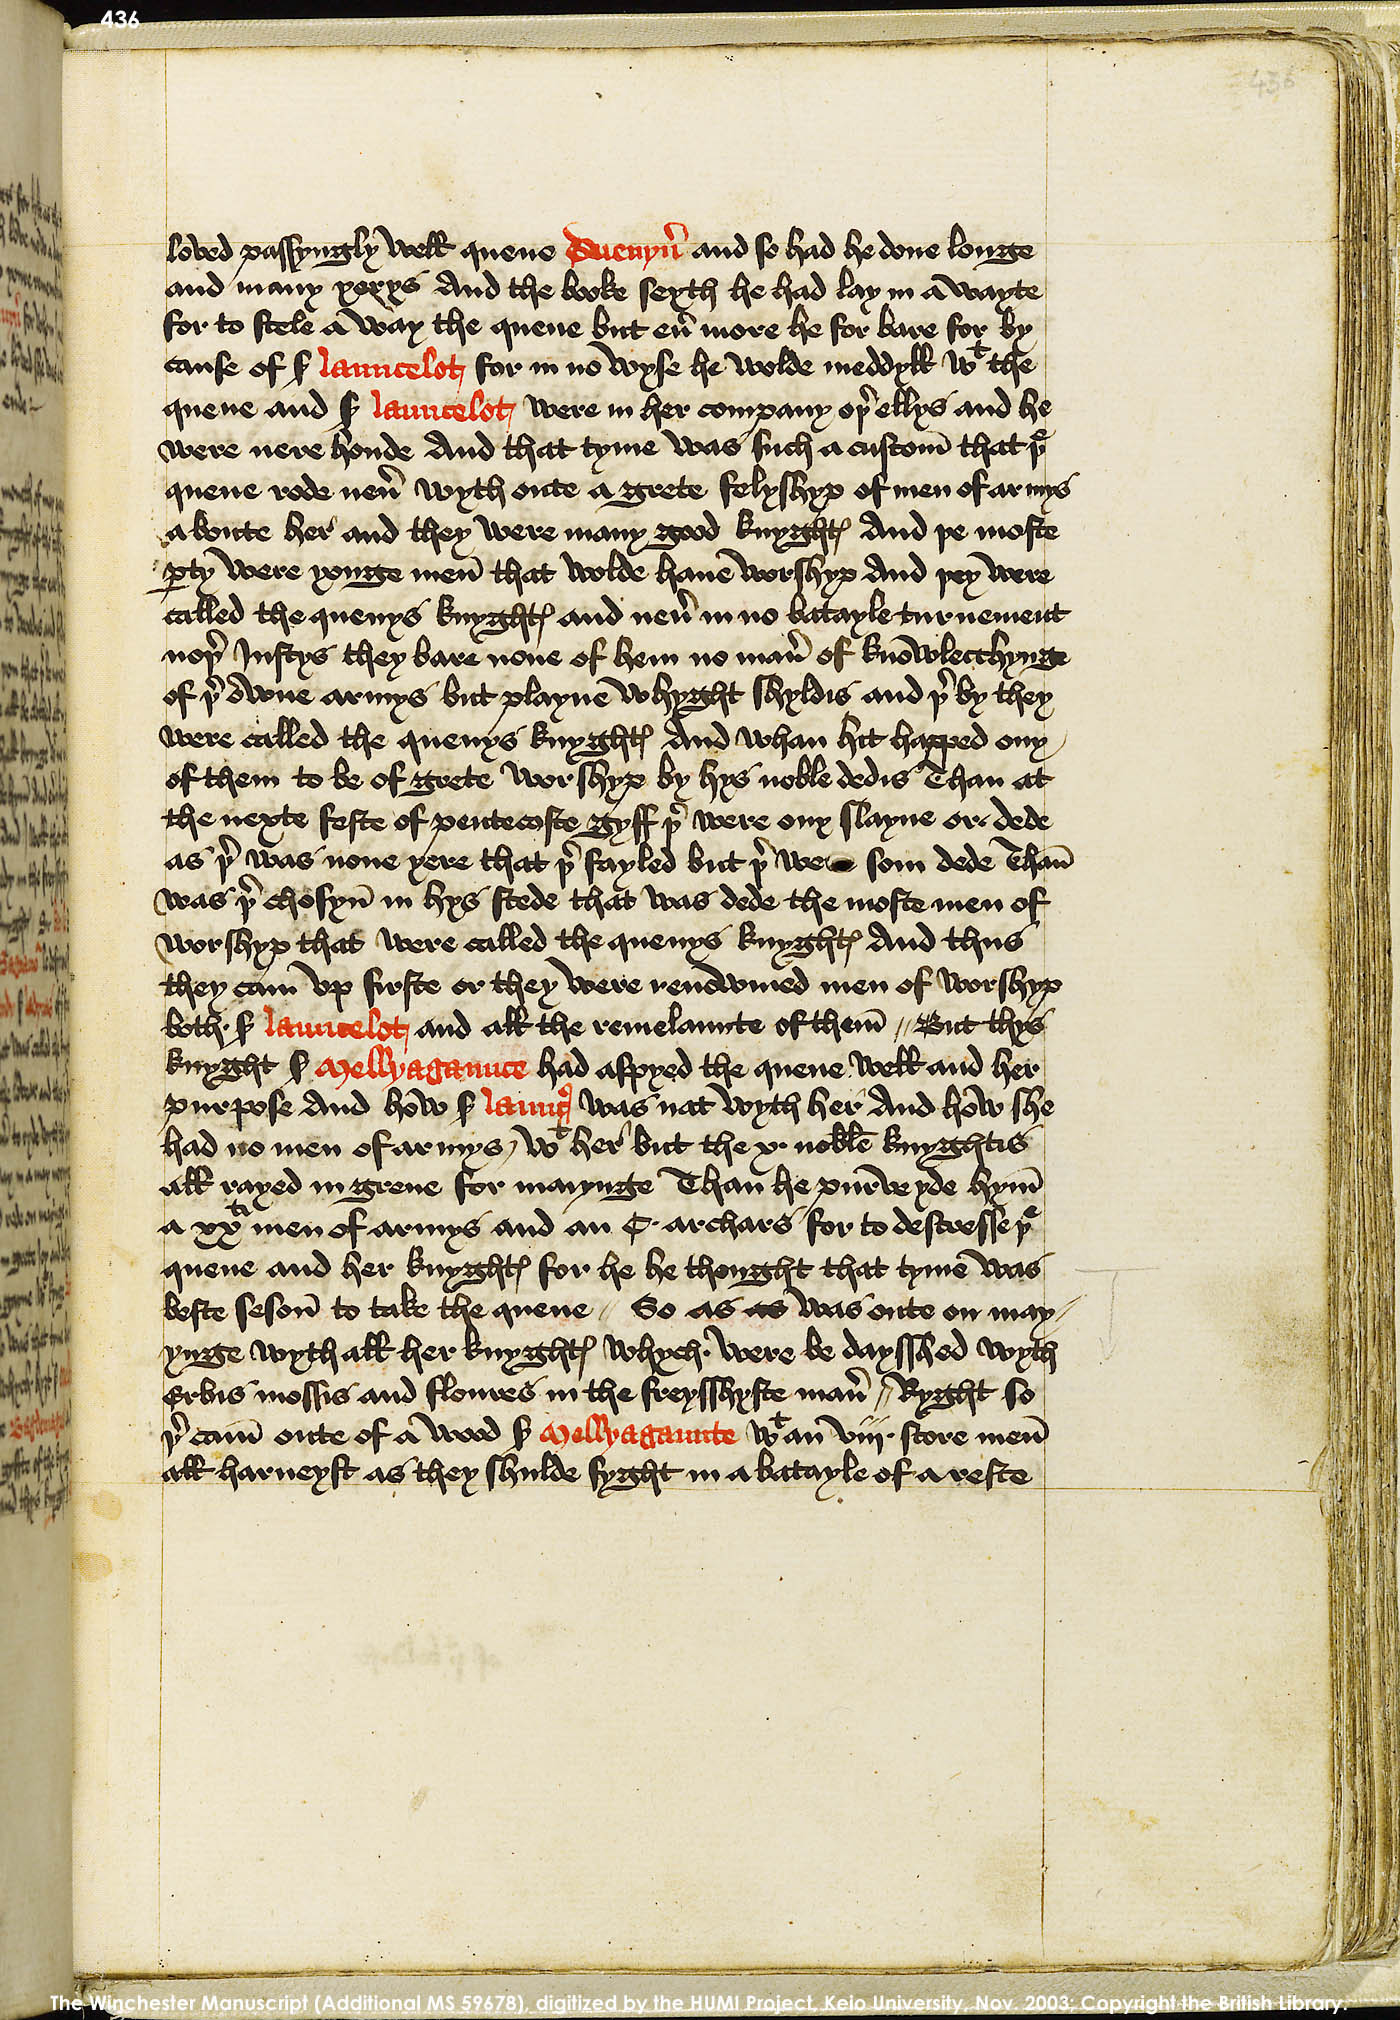 Folio 436r